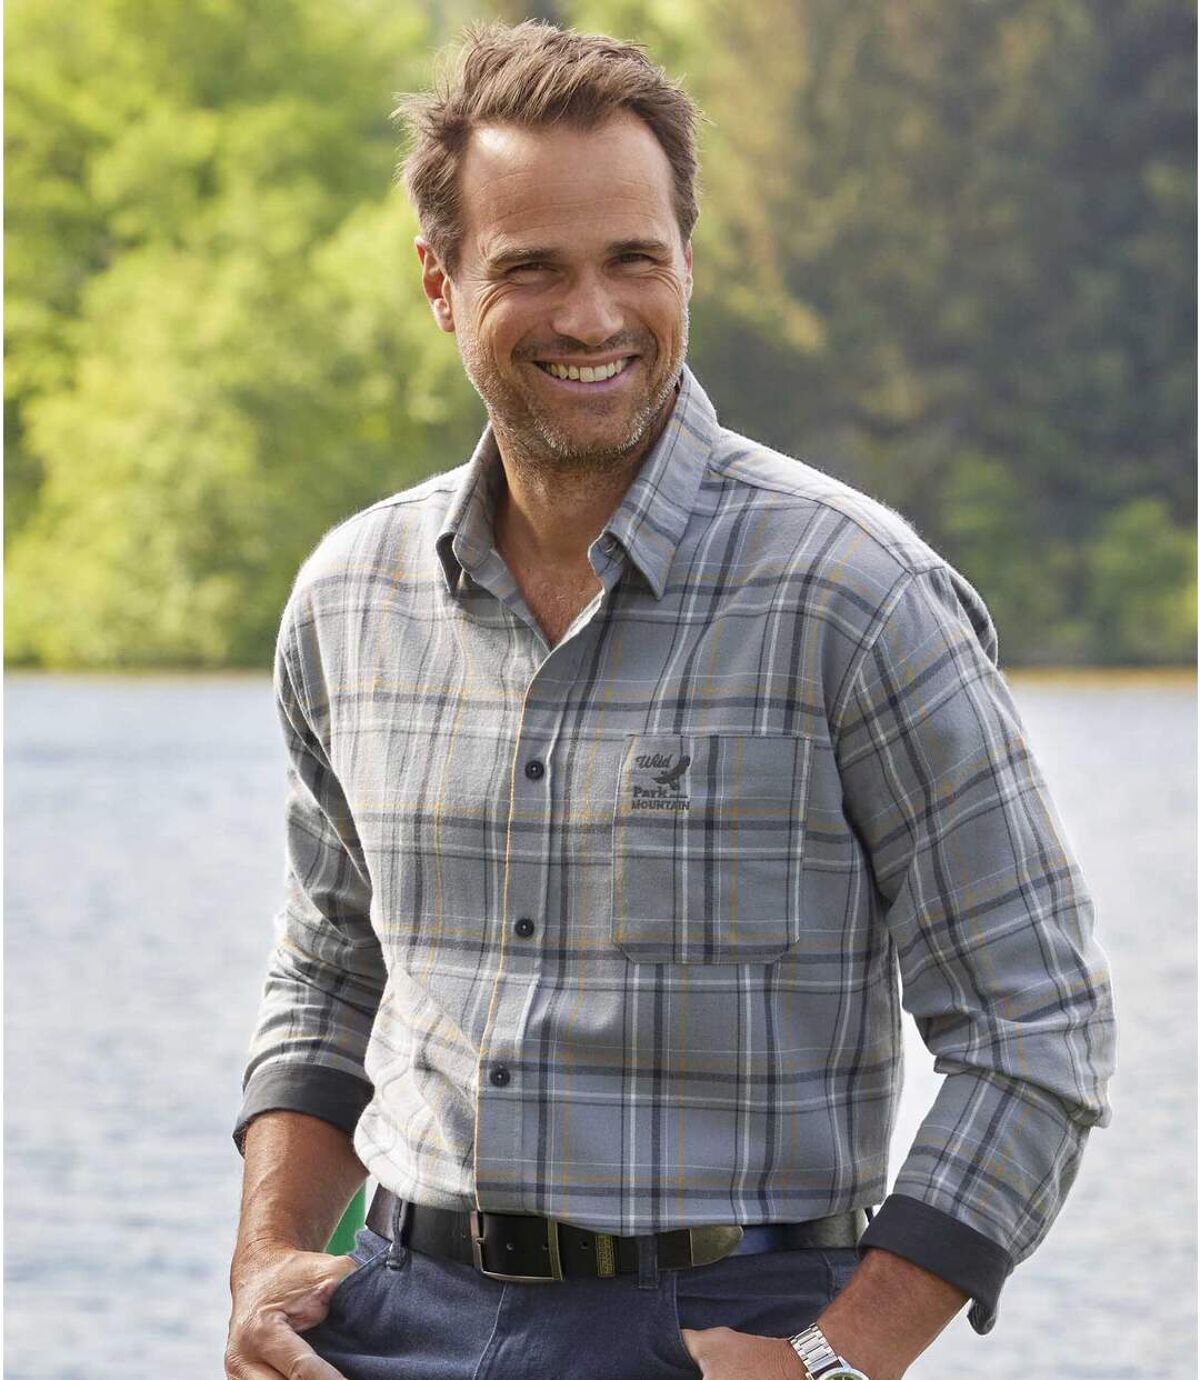 Men's Gray Checked Flannel Shirt Atlas For Men